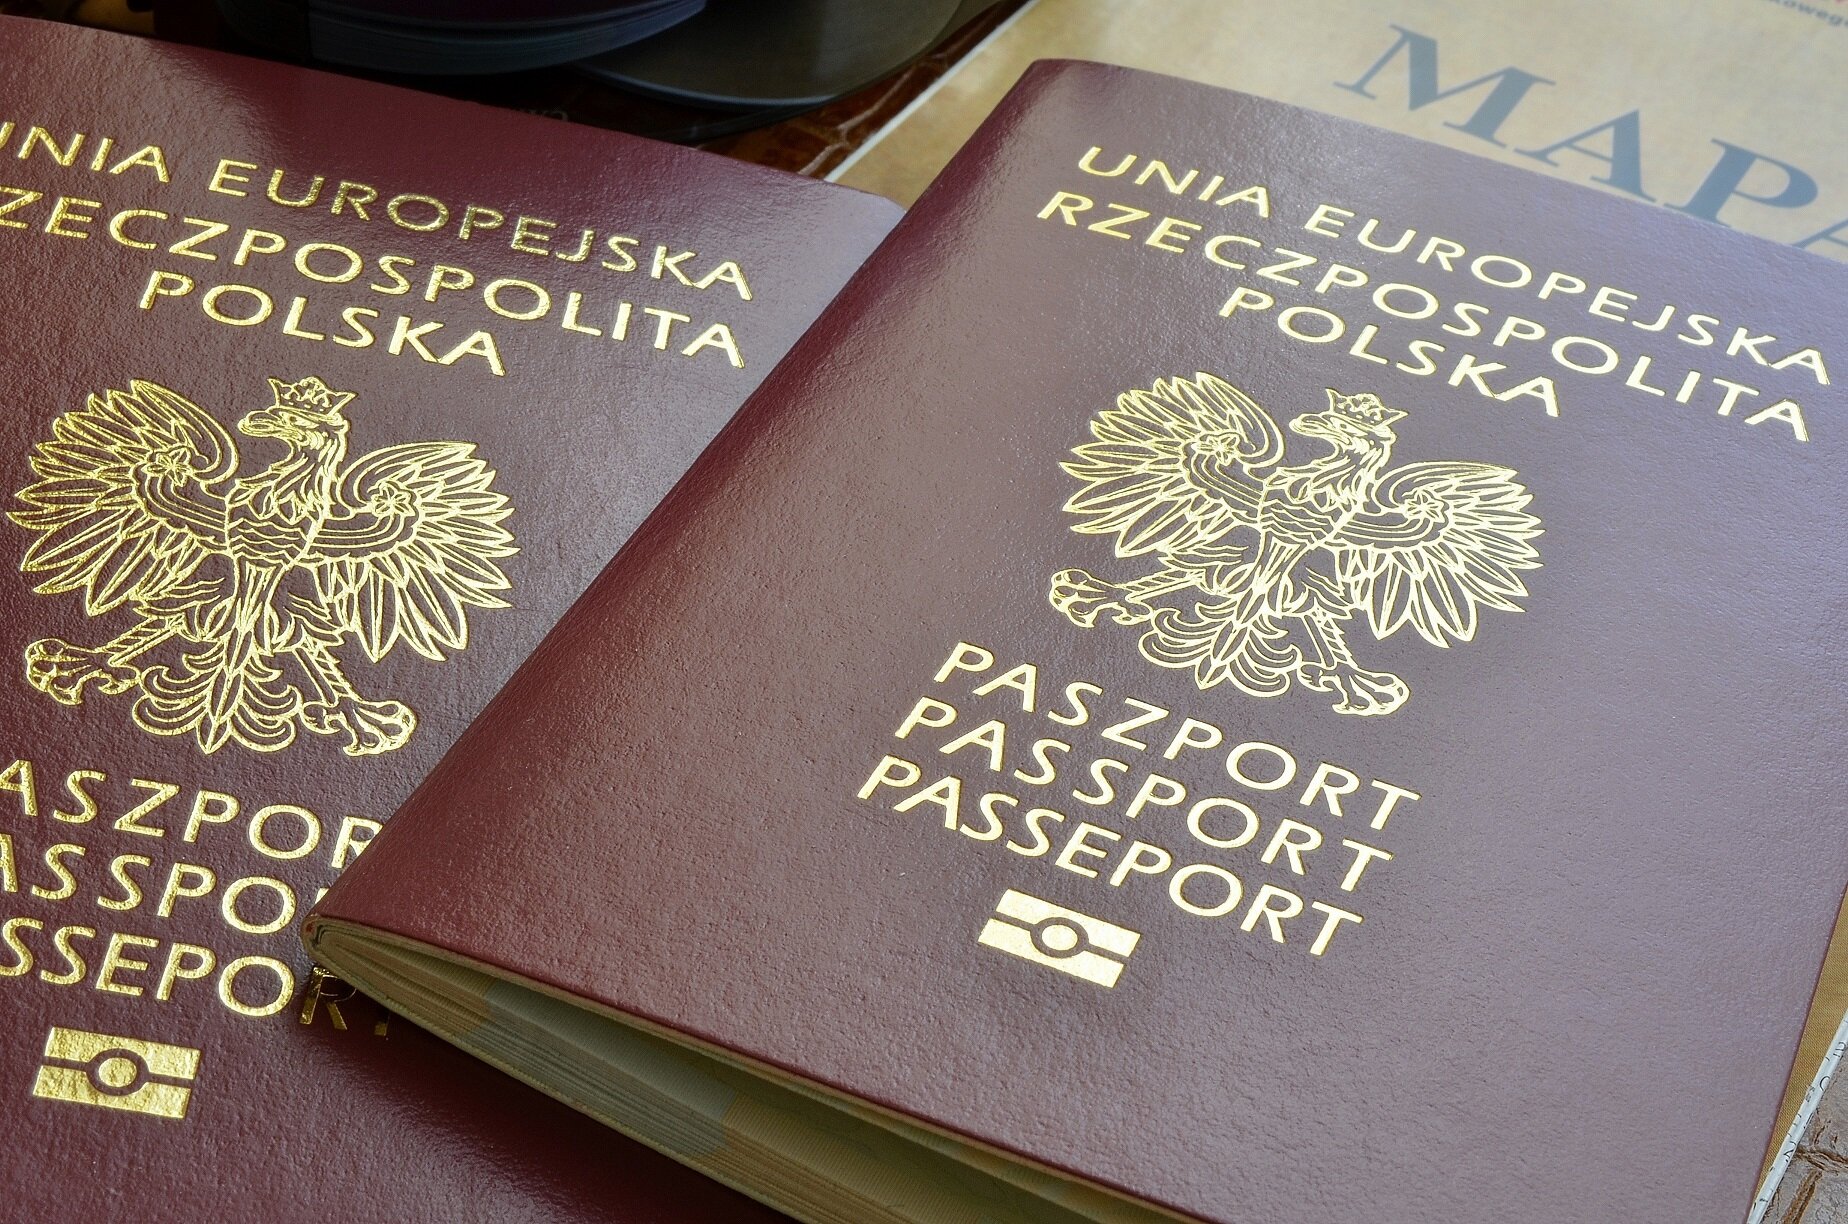 Zdjęcie przedstawia książeczki paszportowe ułożone na stole. Na książeczce widnieje godło polskie oraz napisy: Unia Europejska Rzeczpospolita Polska, Paszport, Passport, Passeport.